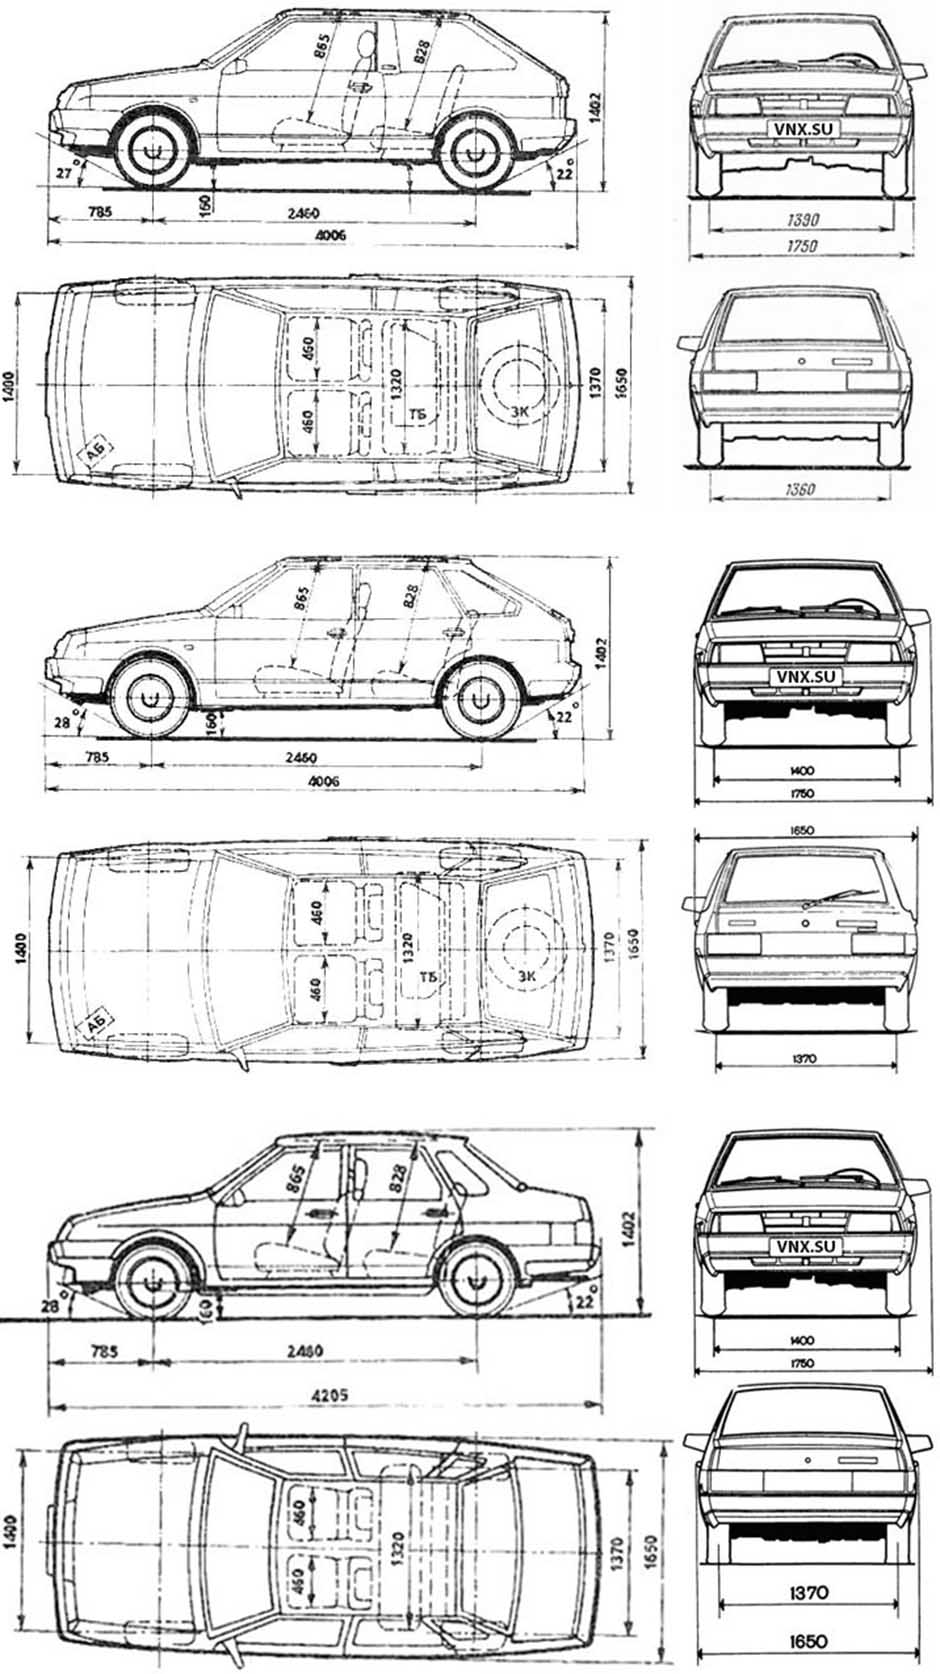 Габаритные размеры ВАЗ-2108, ВАЗ-2109, ВАЗ-21099 (dimensions LADA Samara)